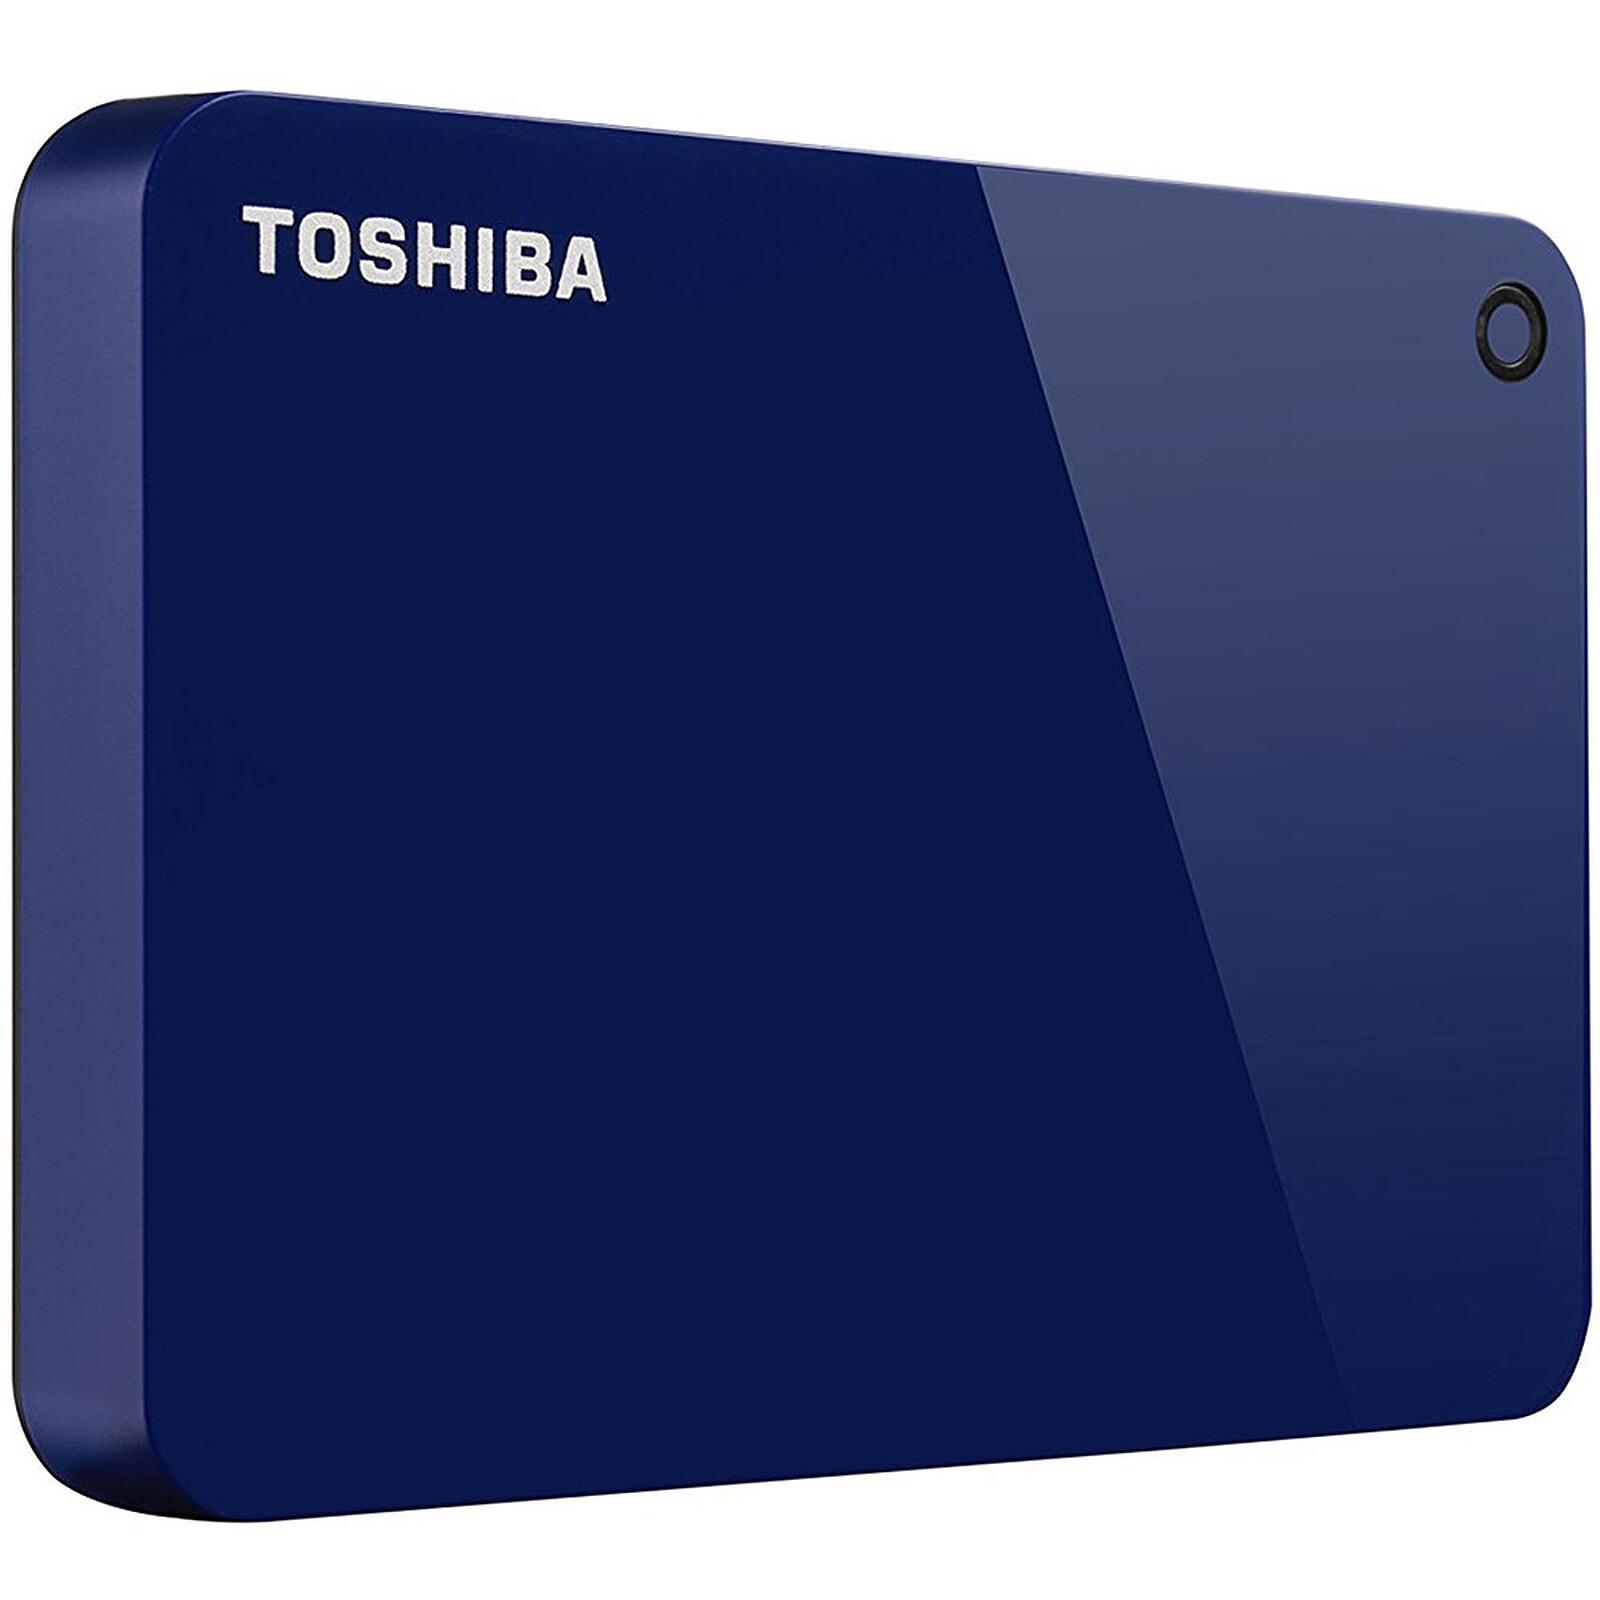 Toshiba Canvio Ready 4 To Noir - Disque dur externe - Garantie 3 ans LDLC